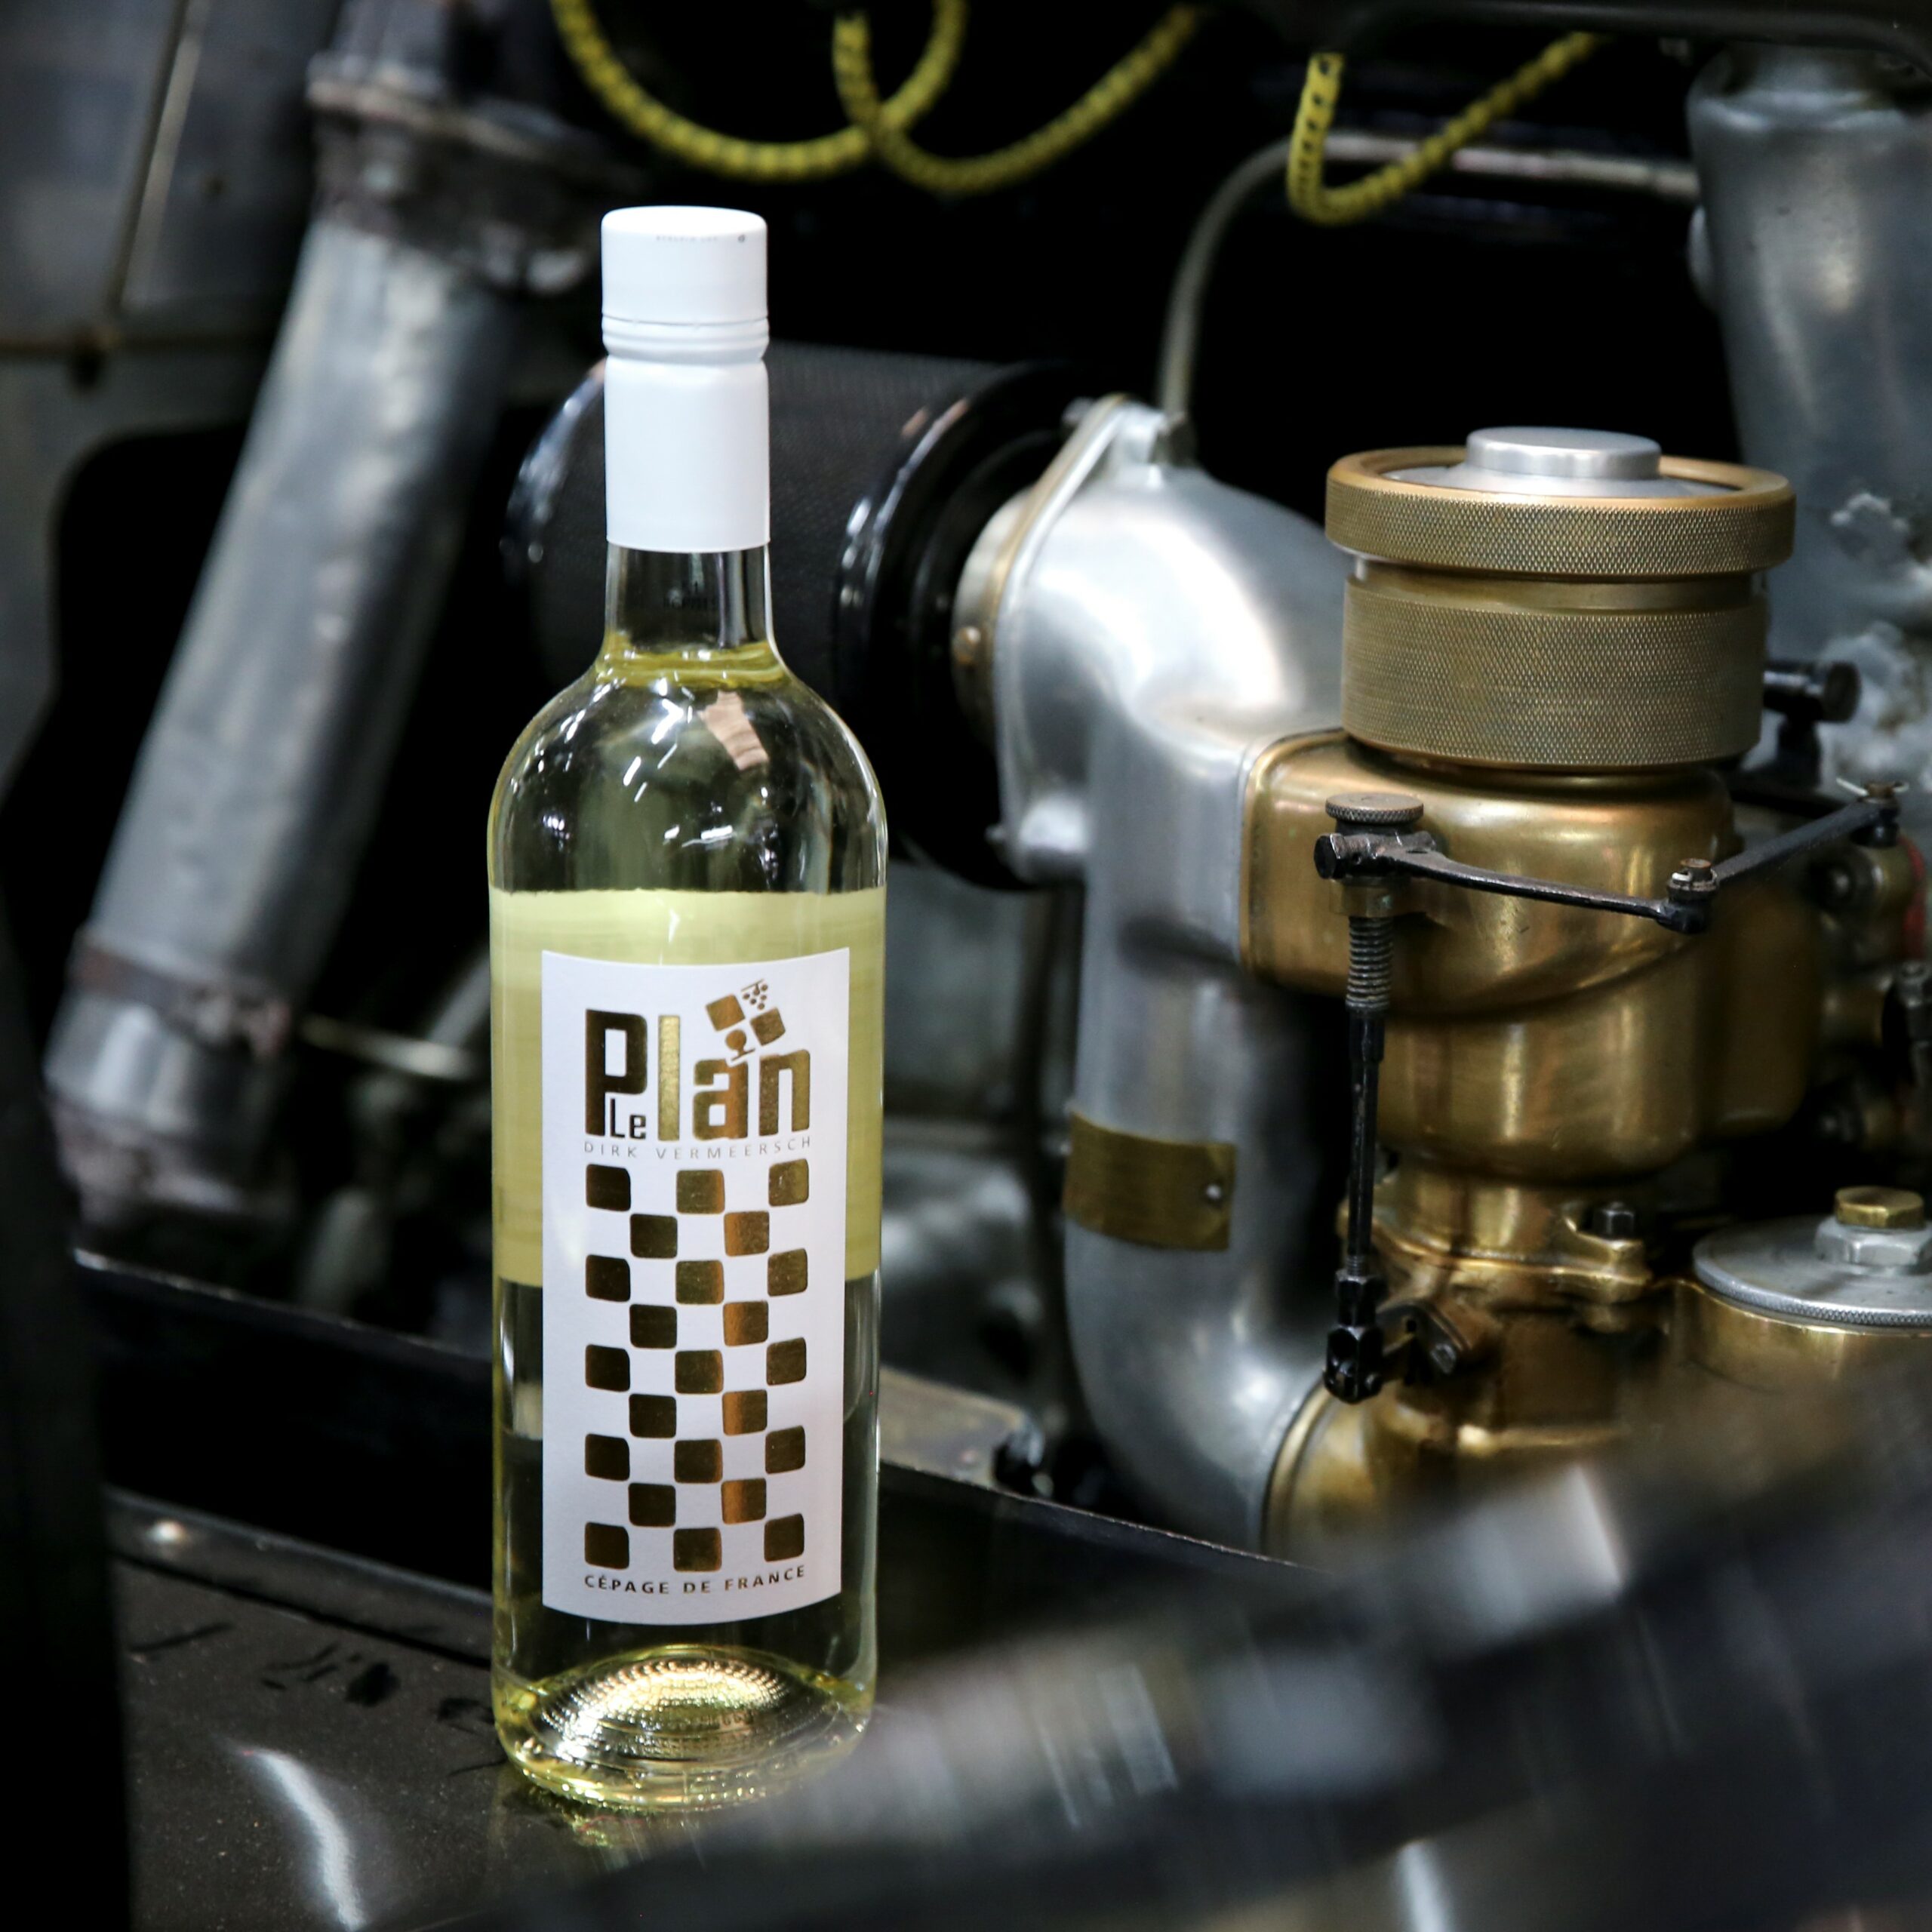 Bouteille de vin blanc Gp-muscat moteur de voiture Cépage de France VDF LePlan-Vermeercsh